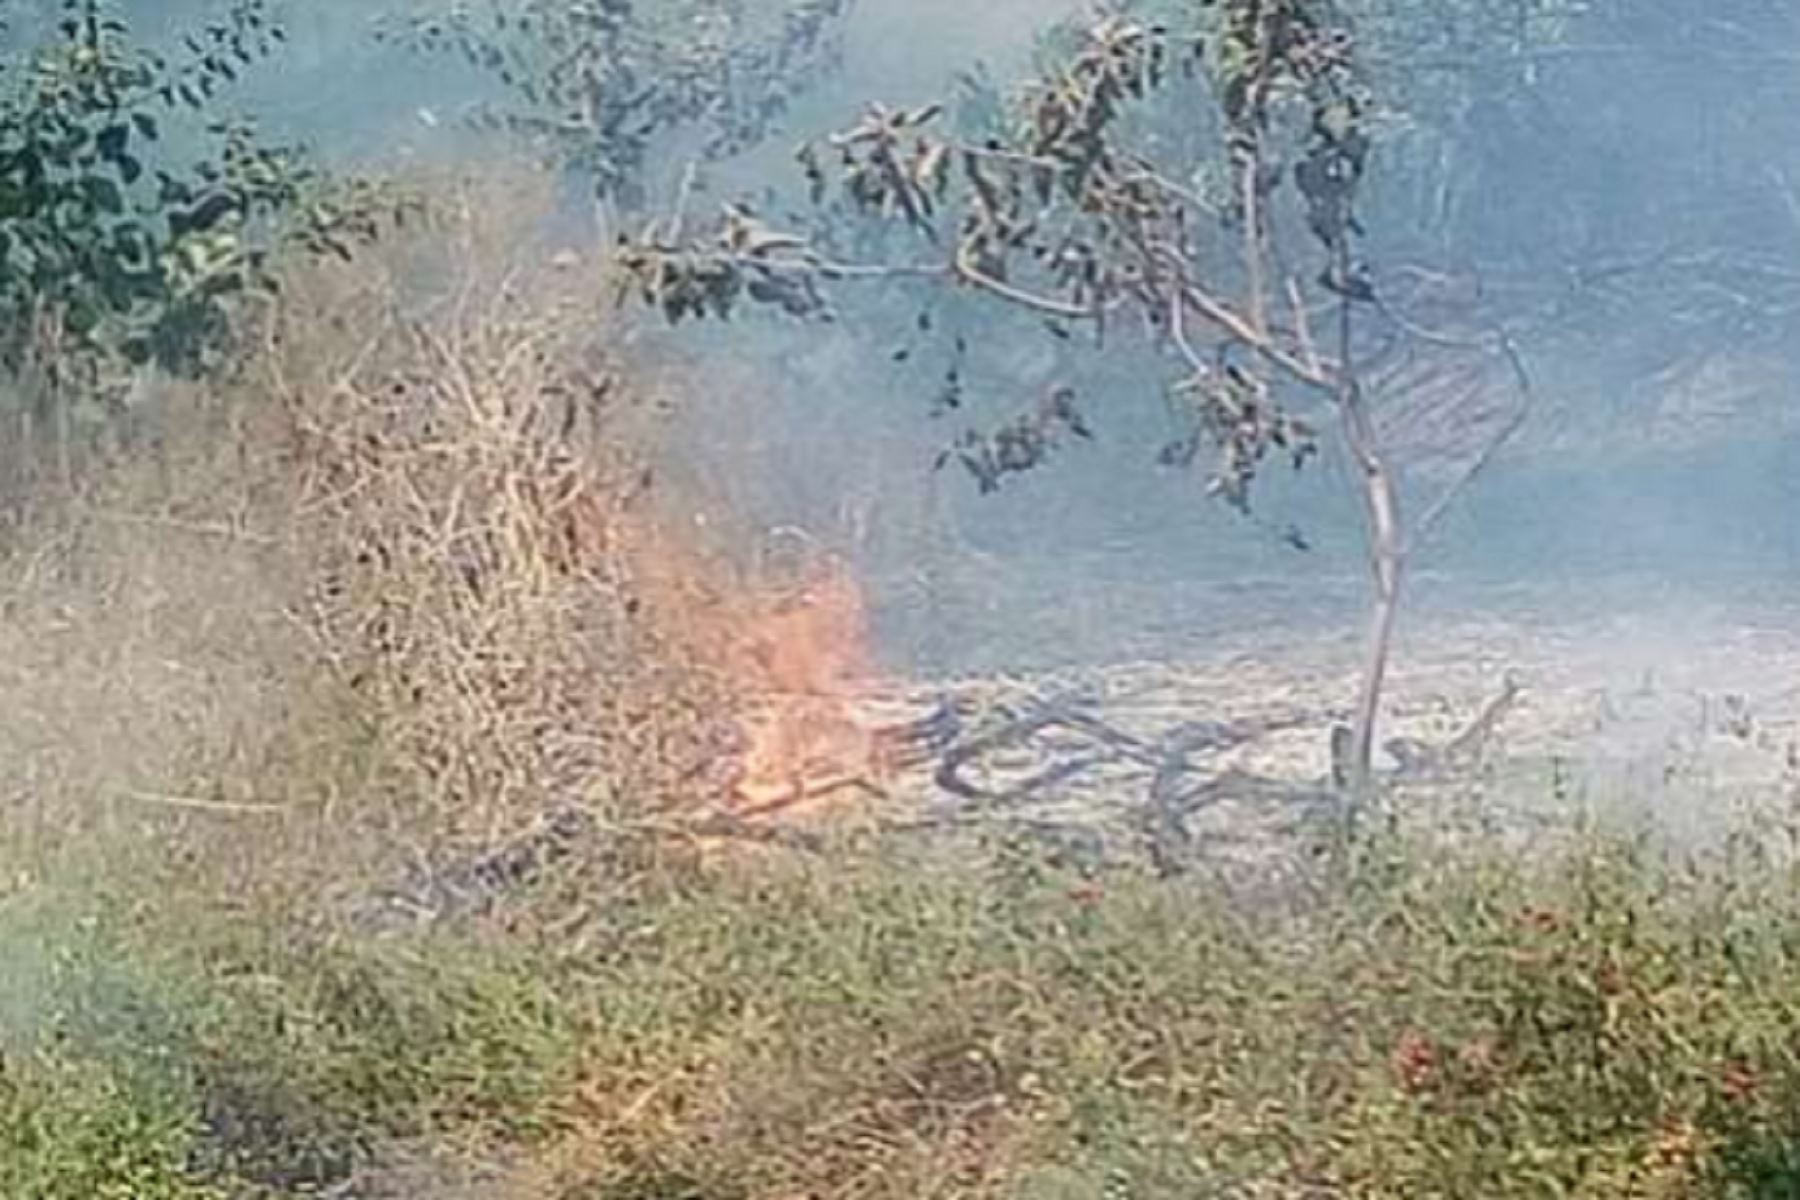 Incendios forestales afectaron 11,750 hectáreas de bosques secos de Piura. ANDINA/Difusión